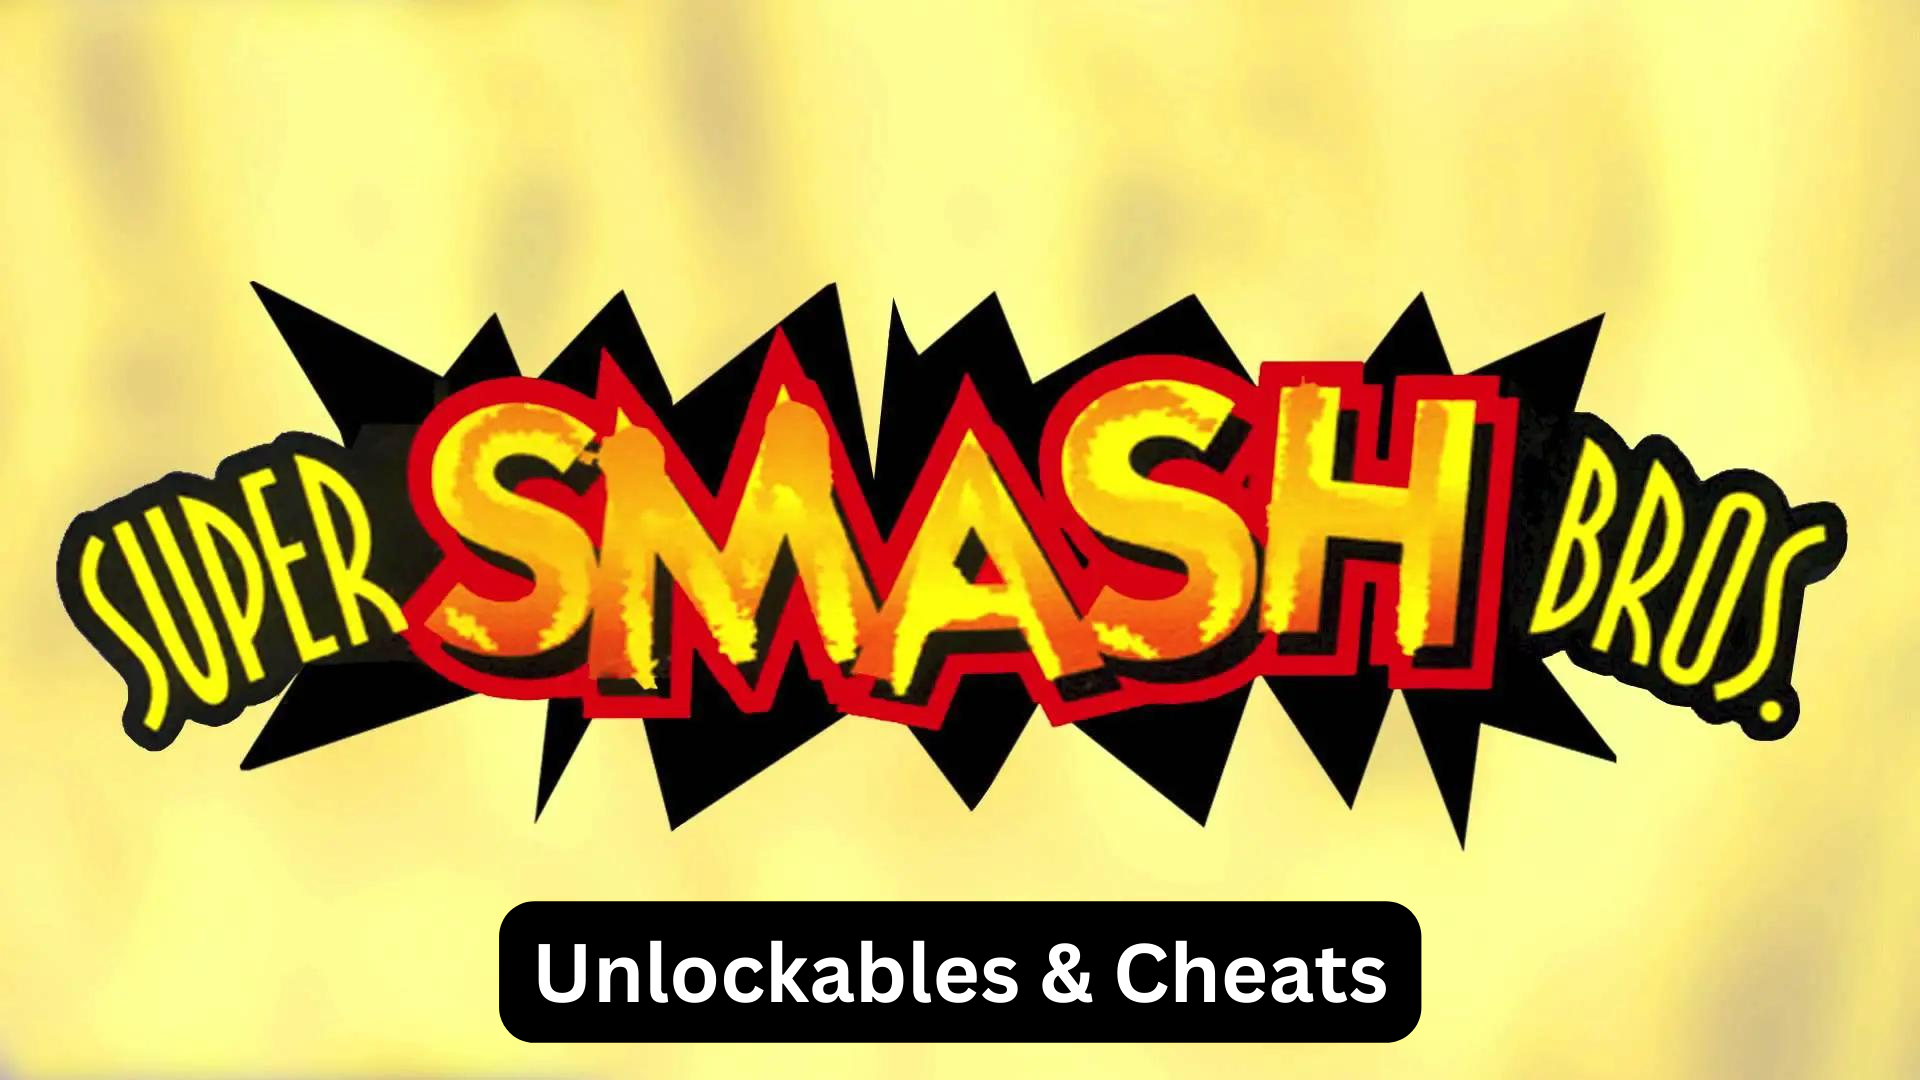 super smash bros. unlockables and cheats